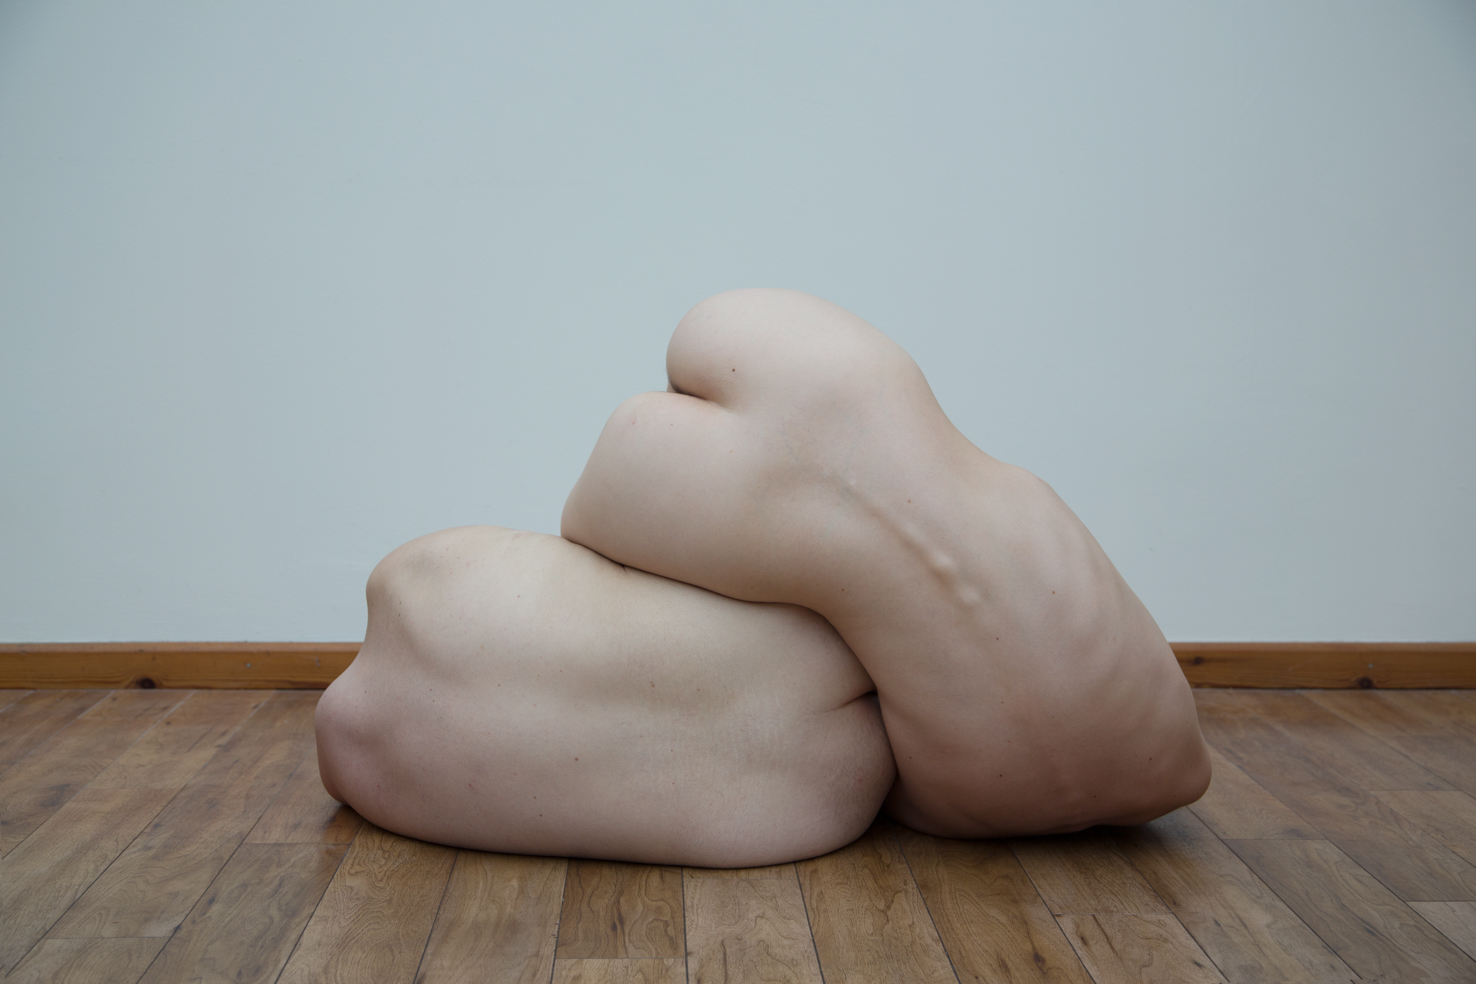 Chloe Rosser’s human sculptures